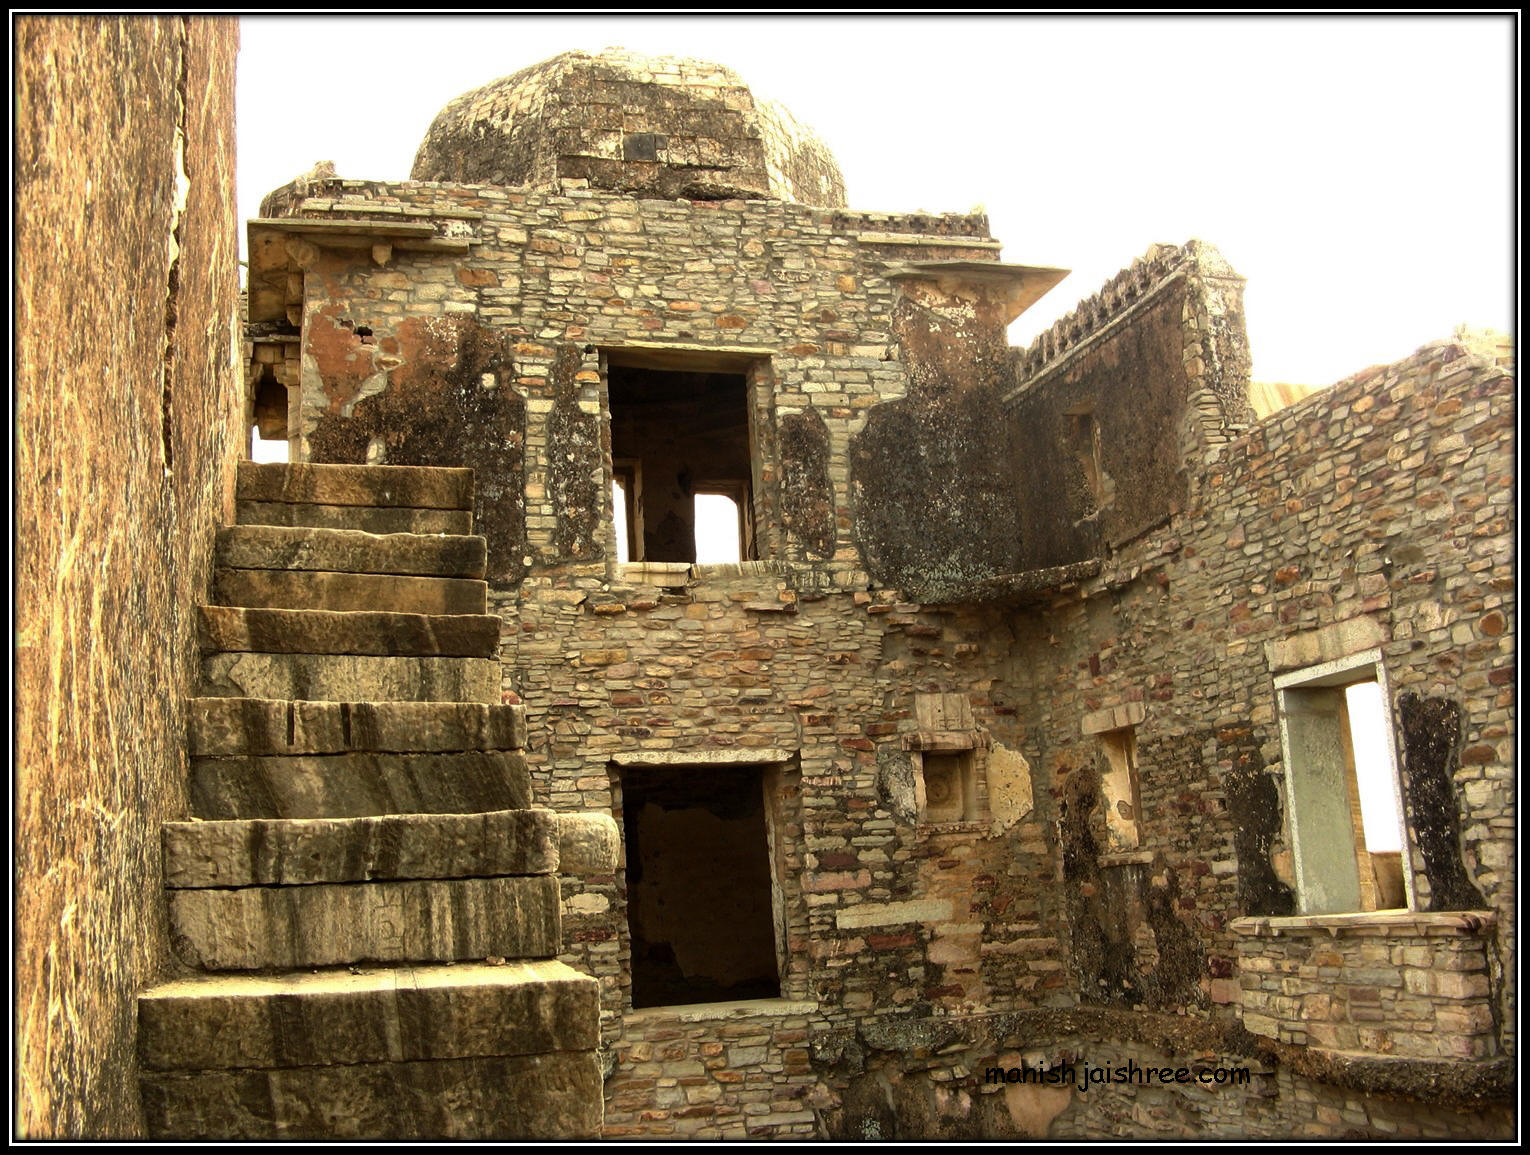 Impressive ruins of Kumbha Mahal